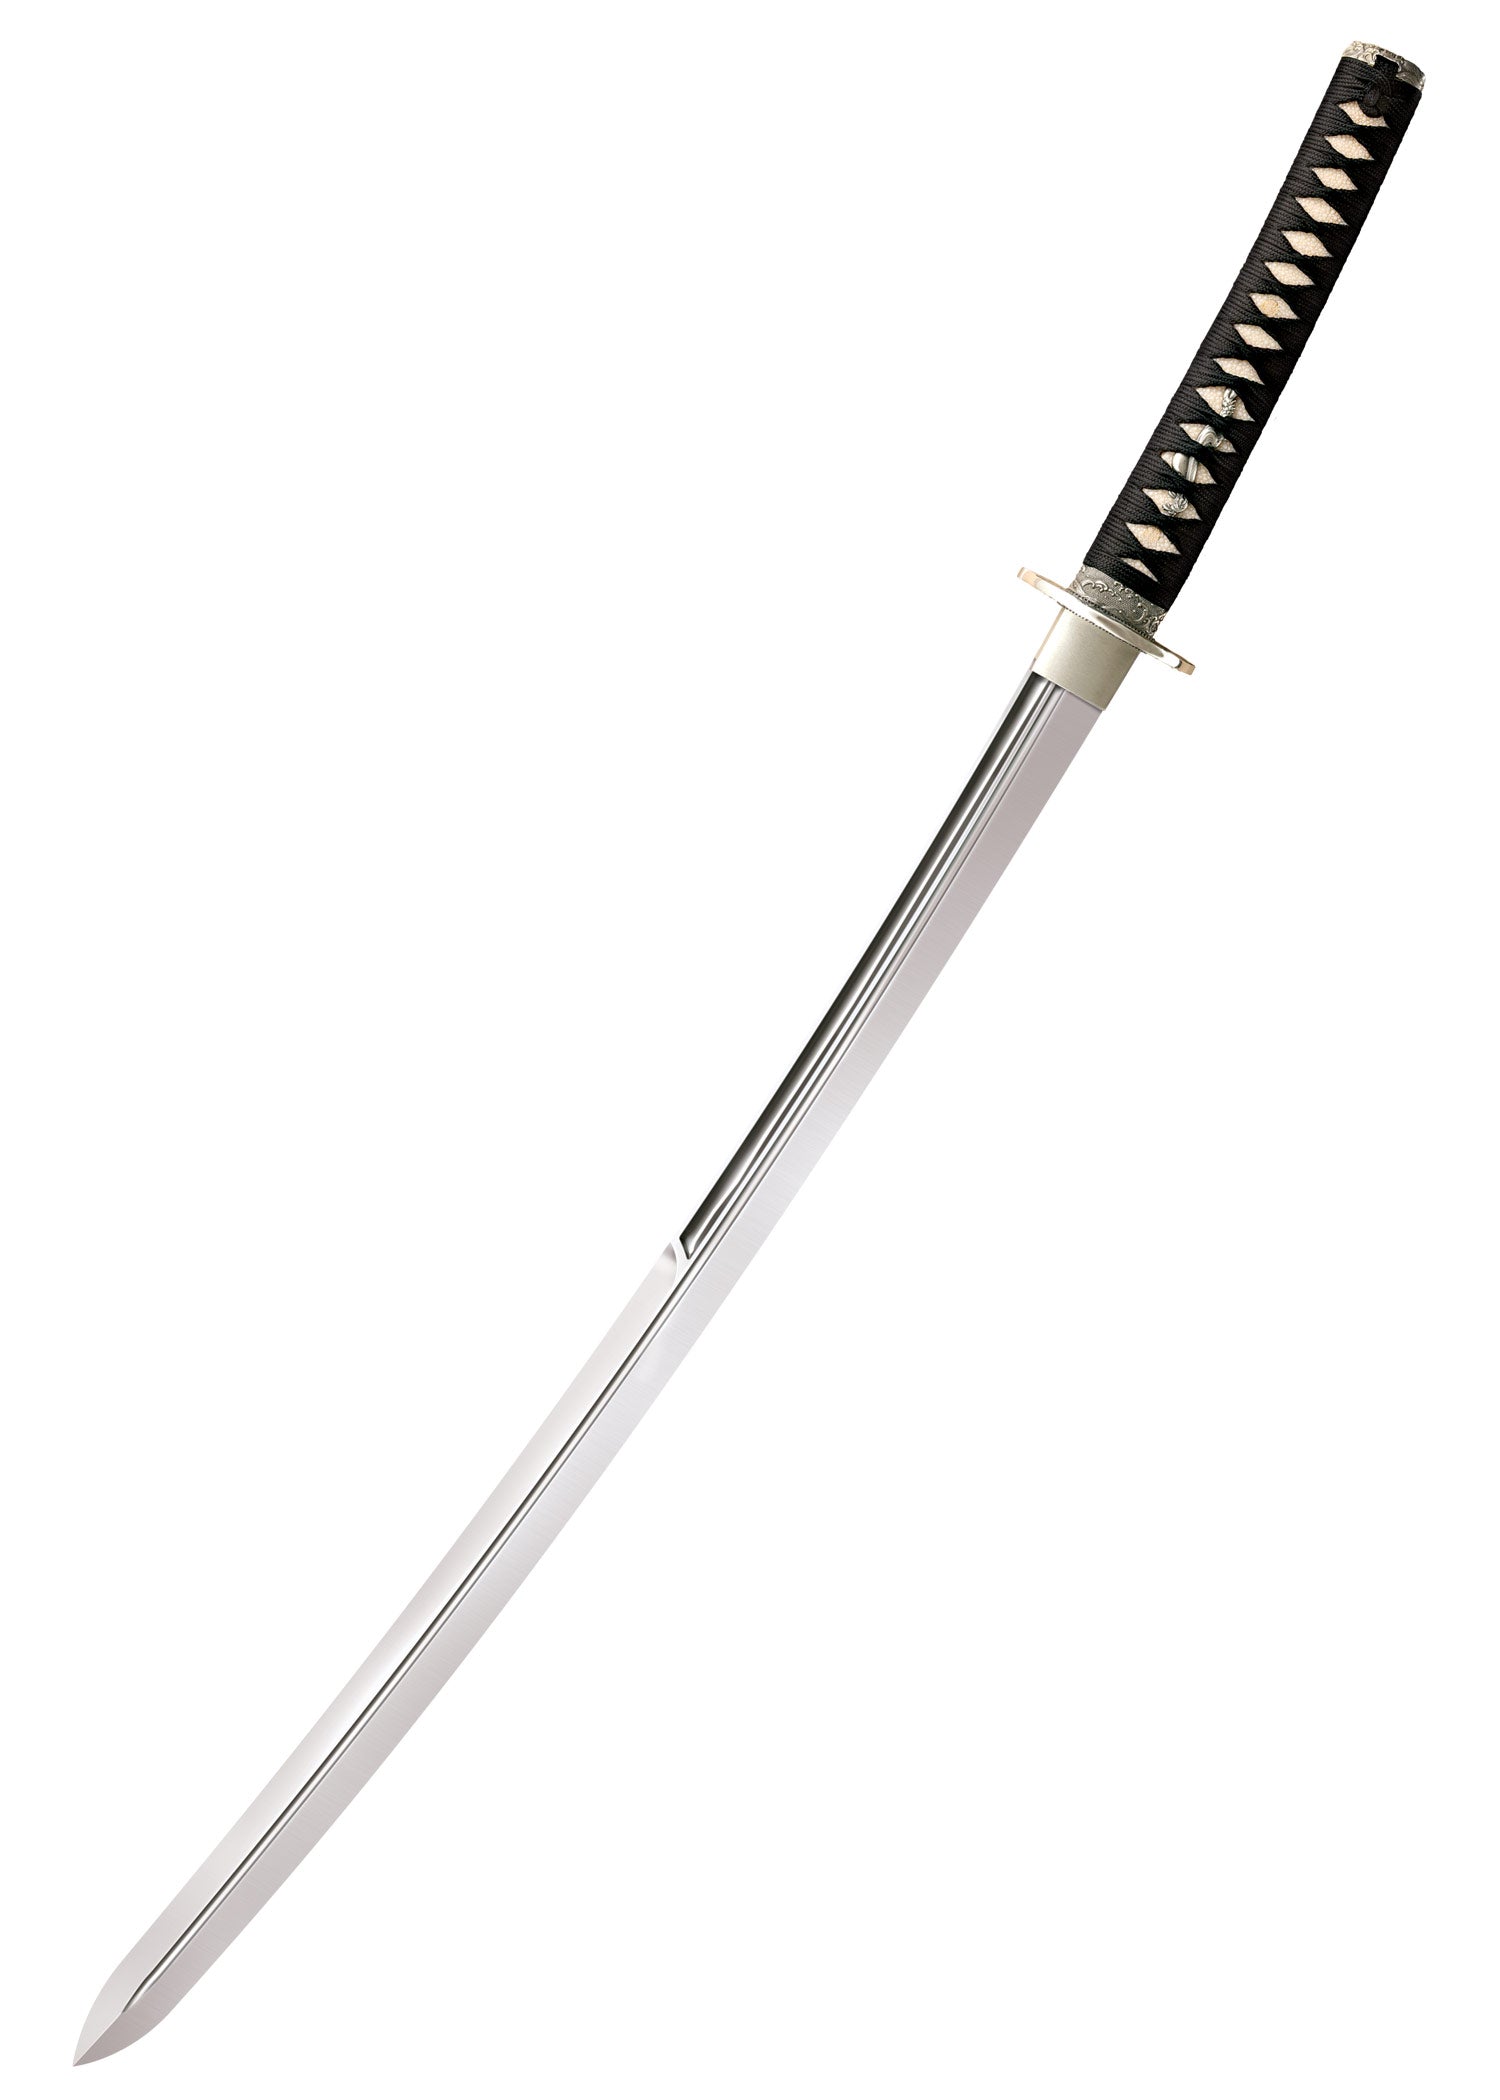 Pleins feux sur l'épée : le katana à double tranchant